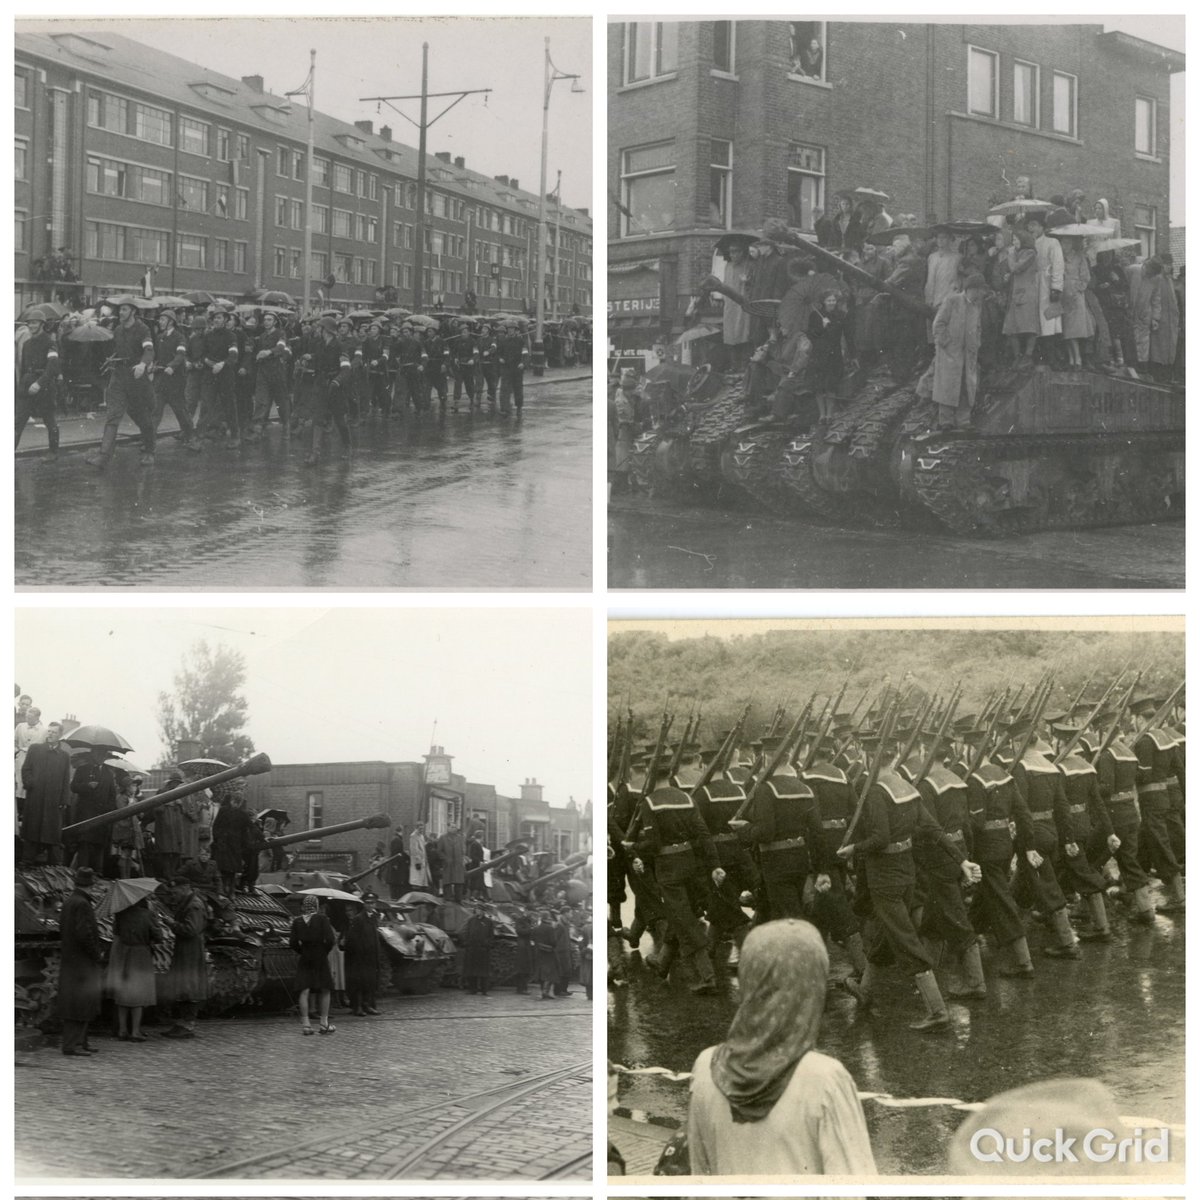 21 mei 1945. Overwinningsparade in Den Haag. Vliegtuigen van de RAF vlogen over. Duizenden Hagenaars stonden in de regen langs de route naar het De Savornin Lohmanplein en zagen de eenheden van het Canadese leger, 21 muziekkorpsen, tanks en pantserwagens.